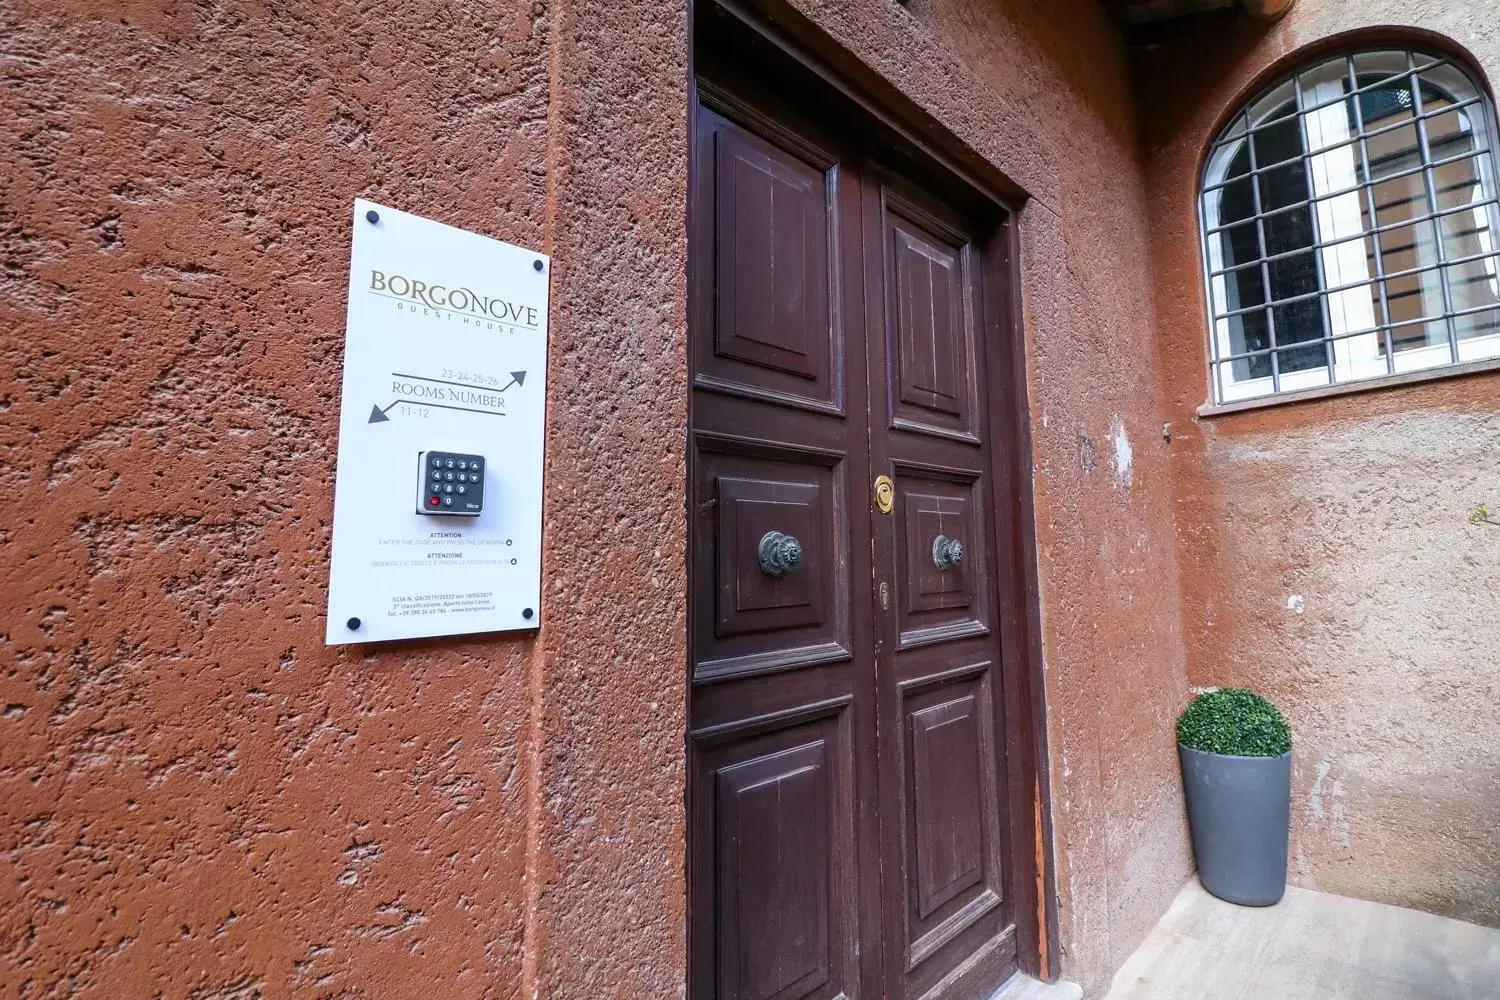 Facade/entrance in BorgoNove